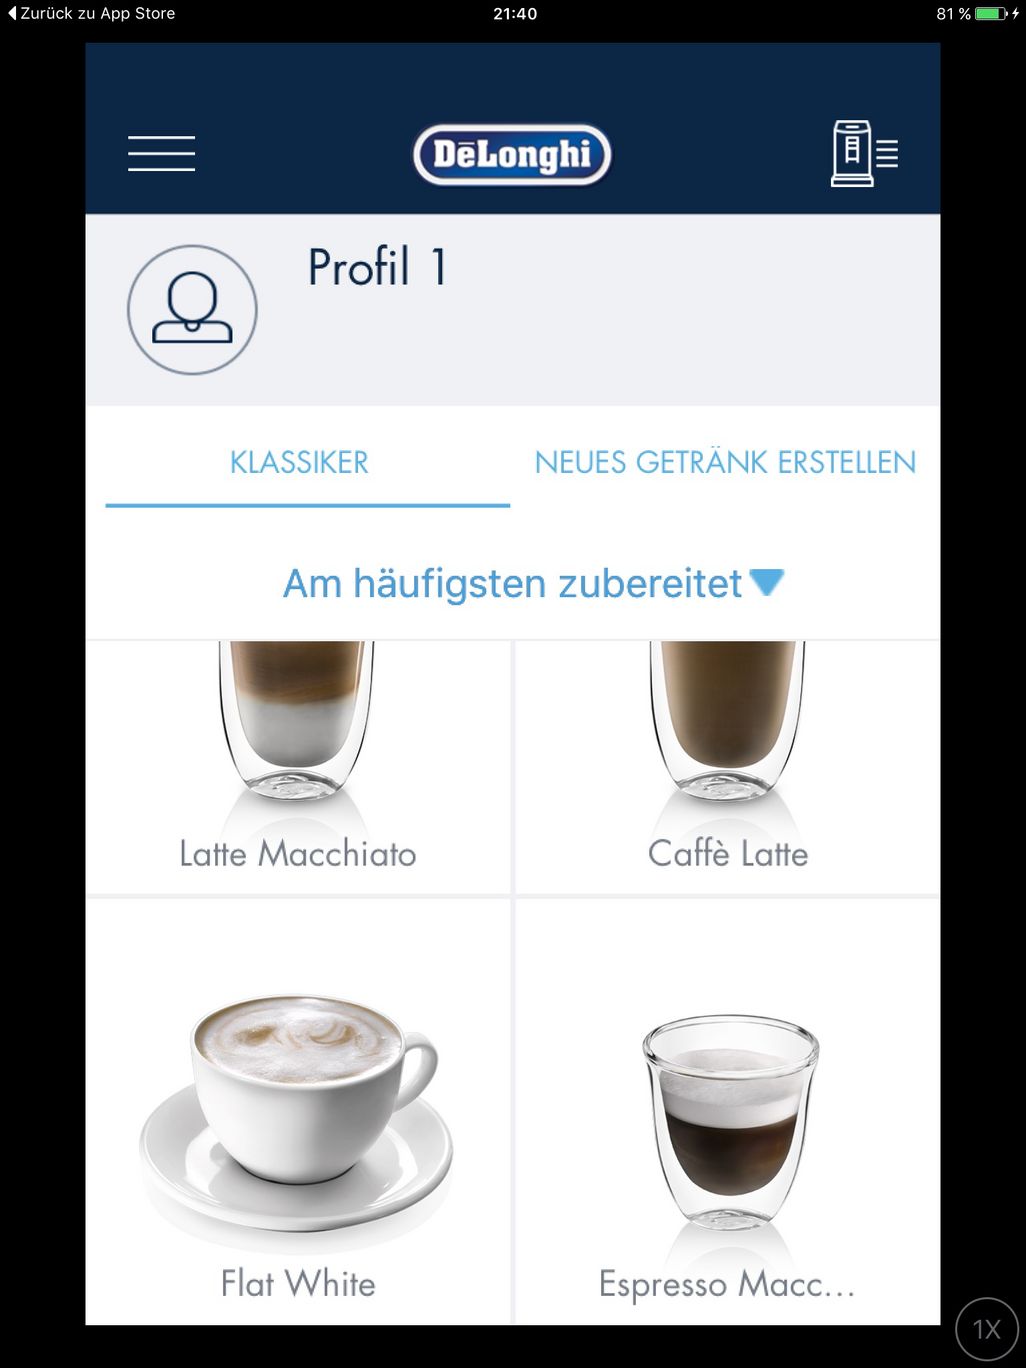 Das richtige Kaffeerezept wird per App ausgewählt